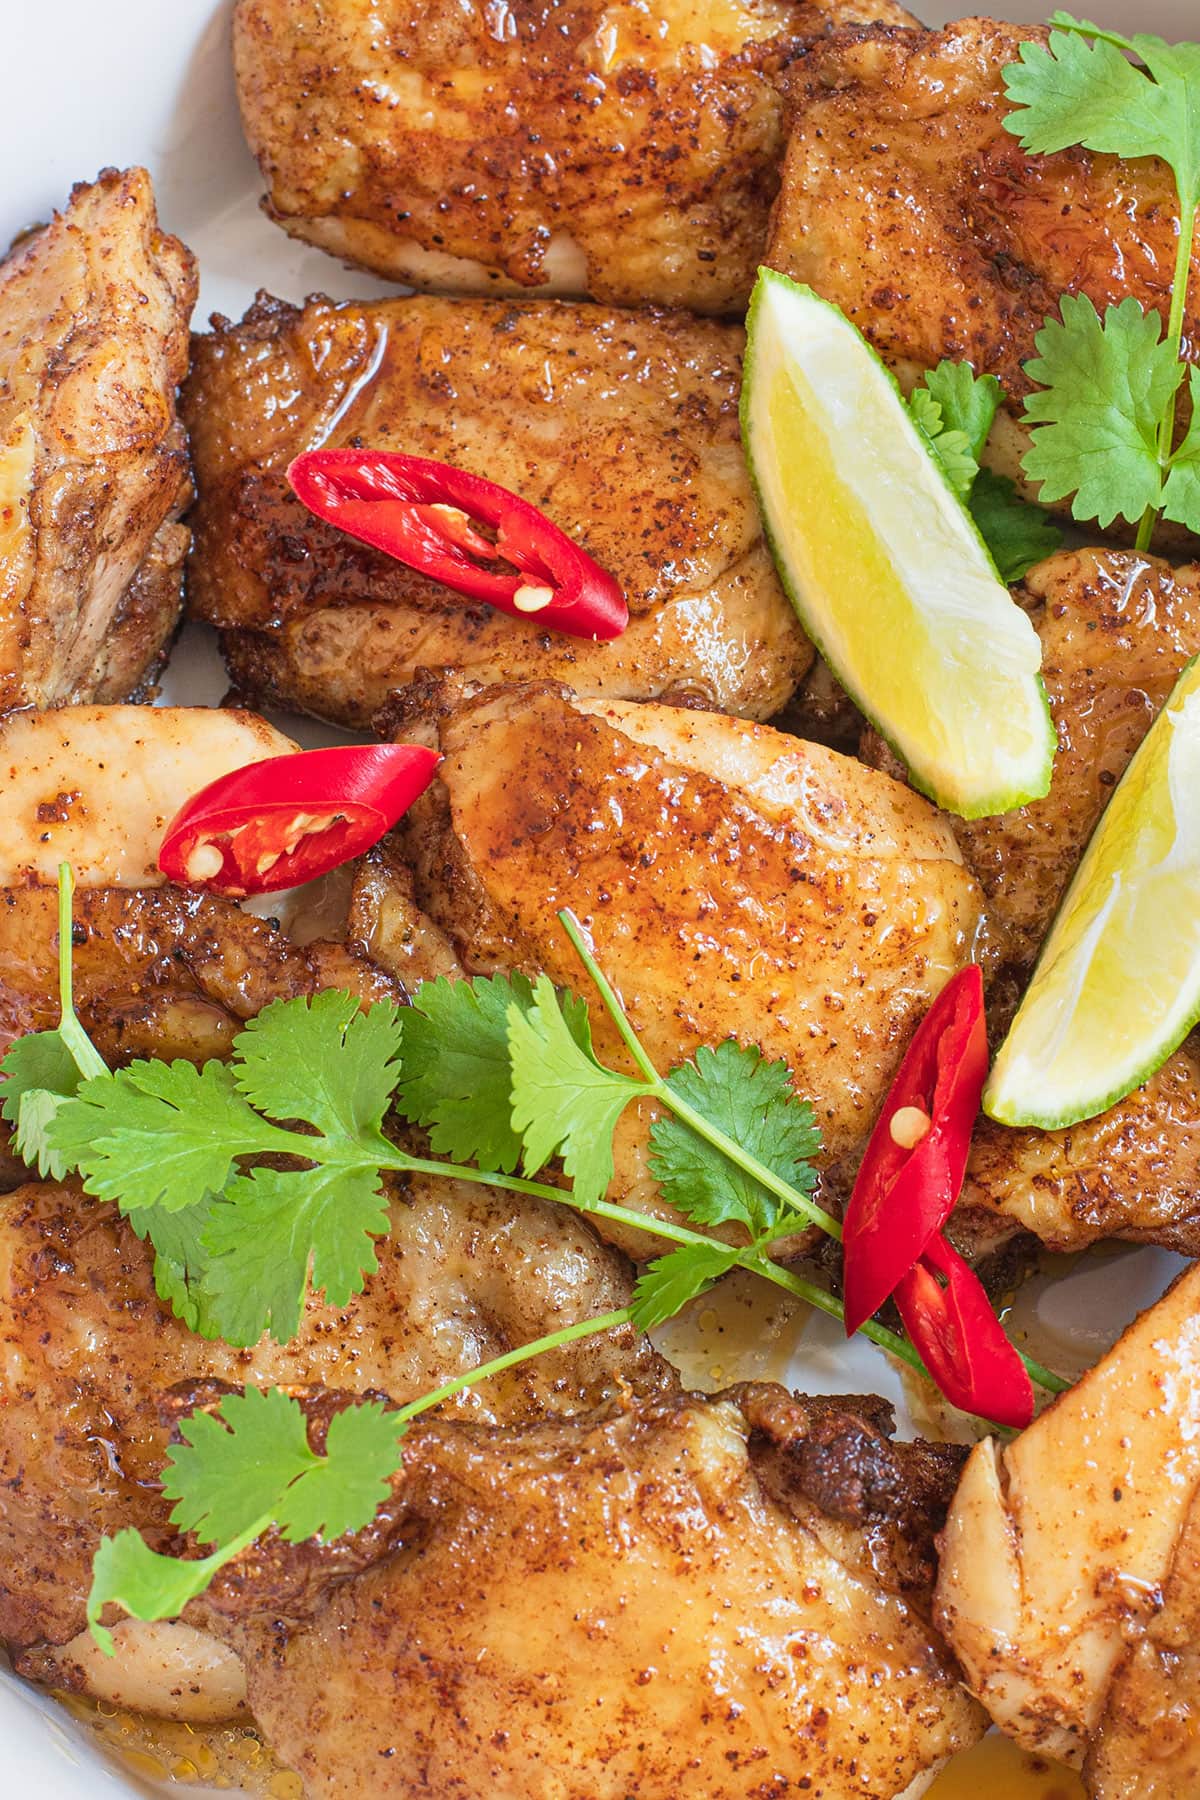 Asya usulü beş baharatlı tavuk servise hazır.